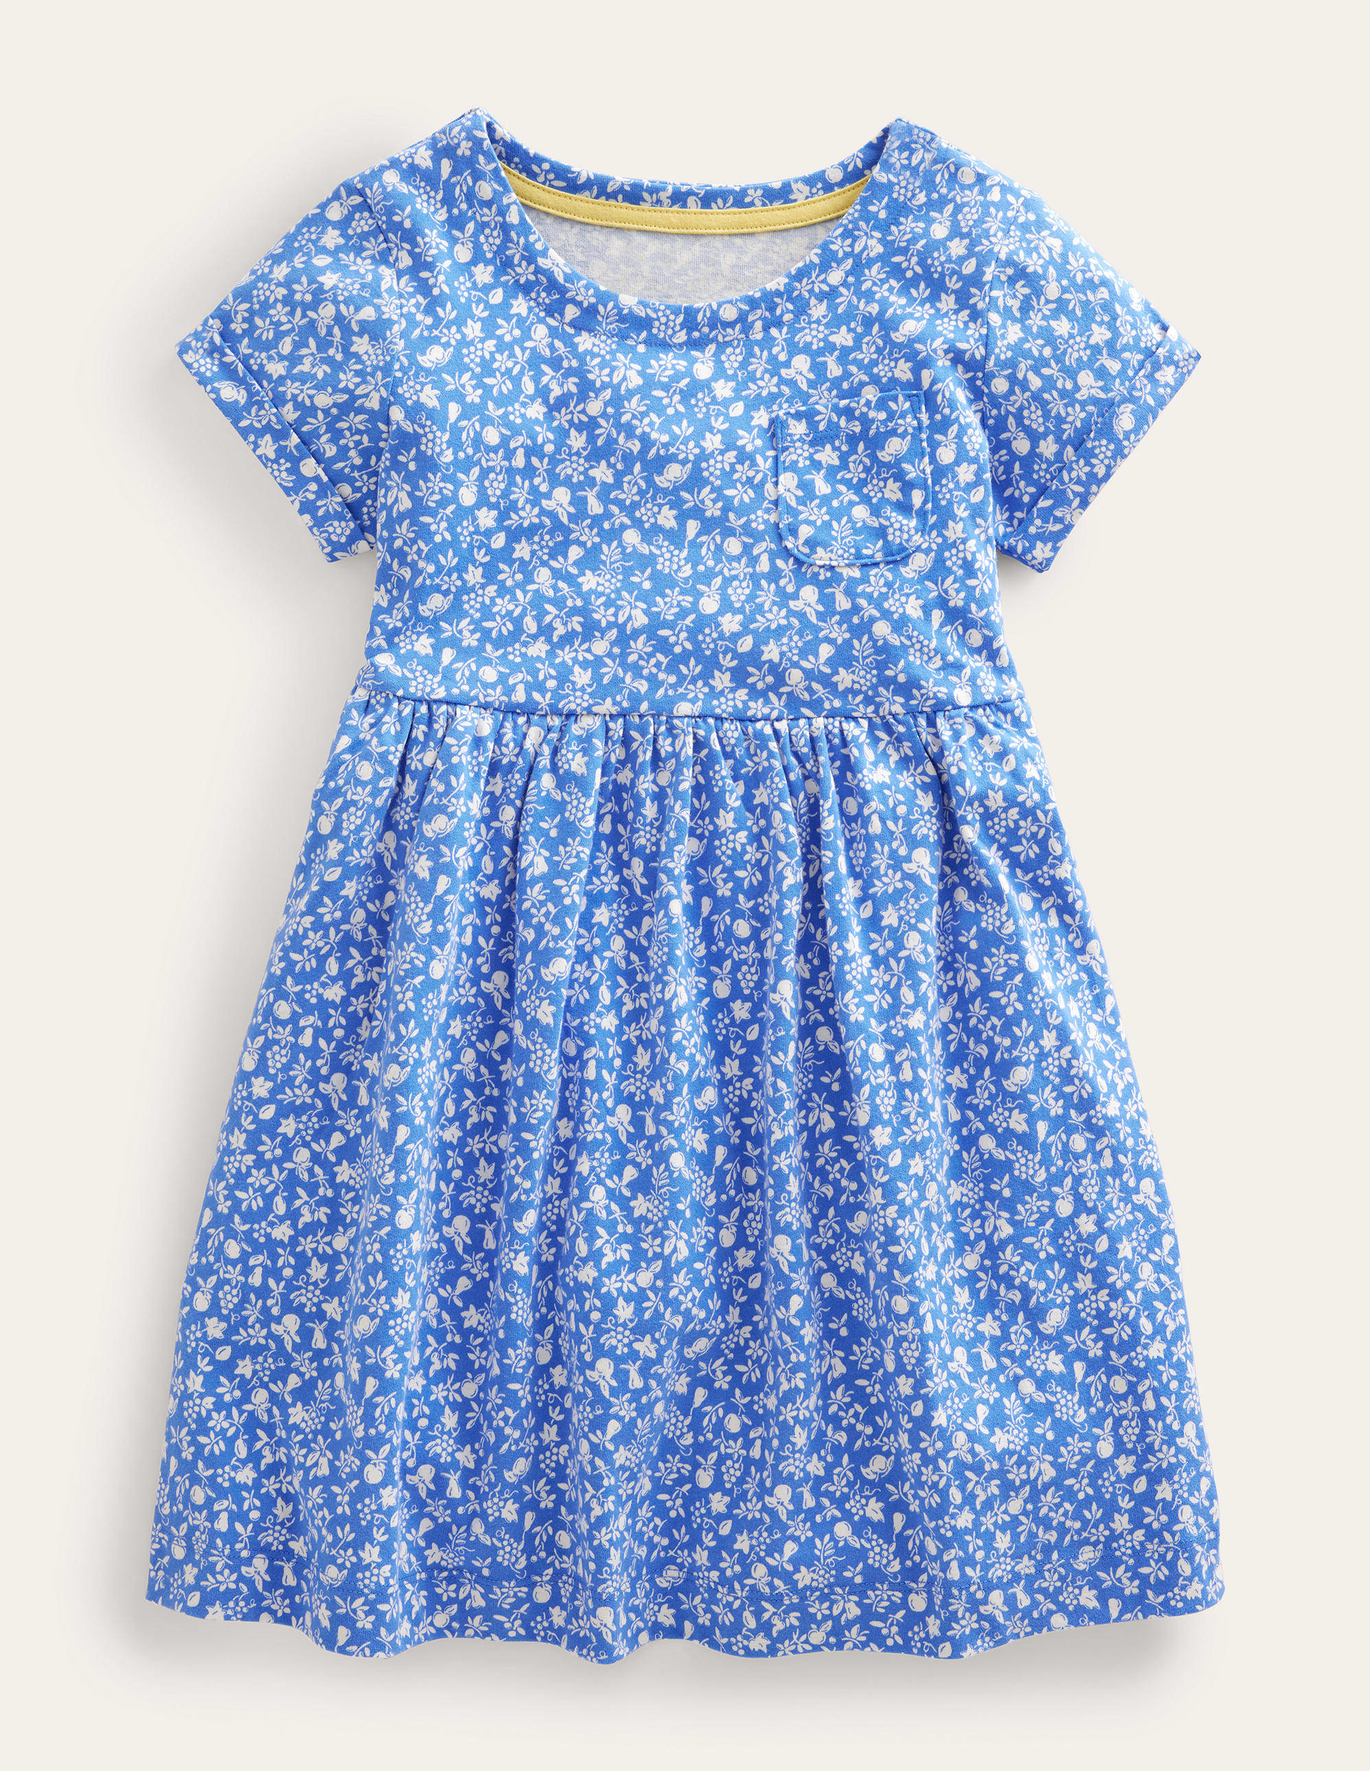 Boden Fun Jersey Dress - Penzance Blue Orchard